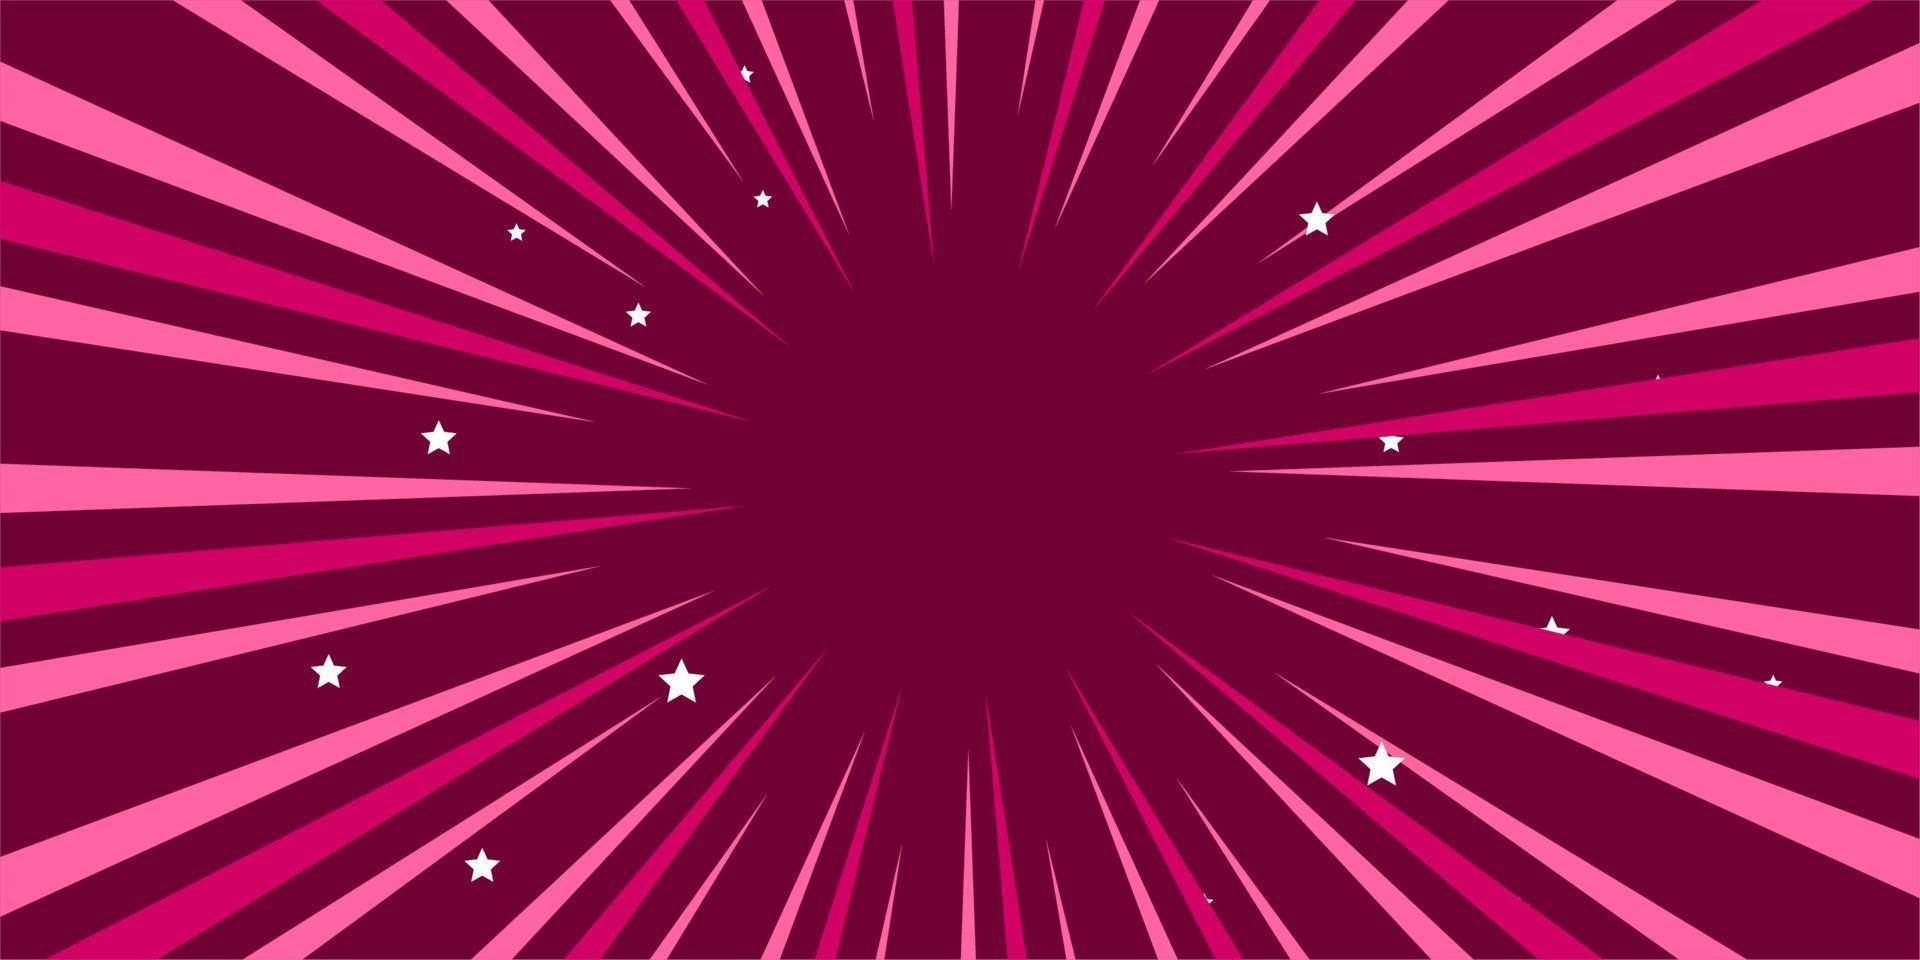 komischer rosa hintergrund mit stern vektor